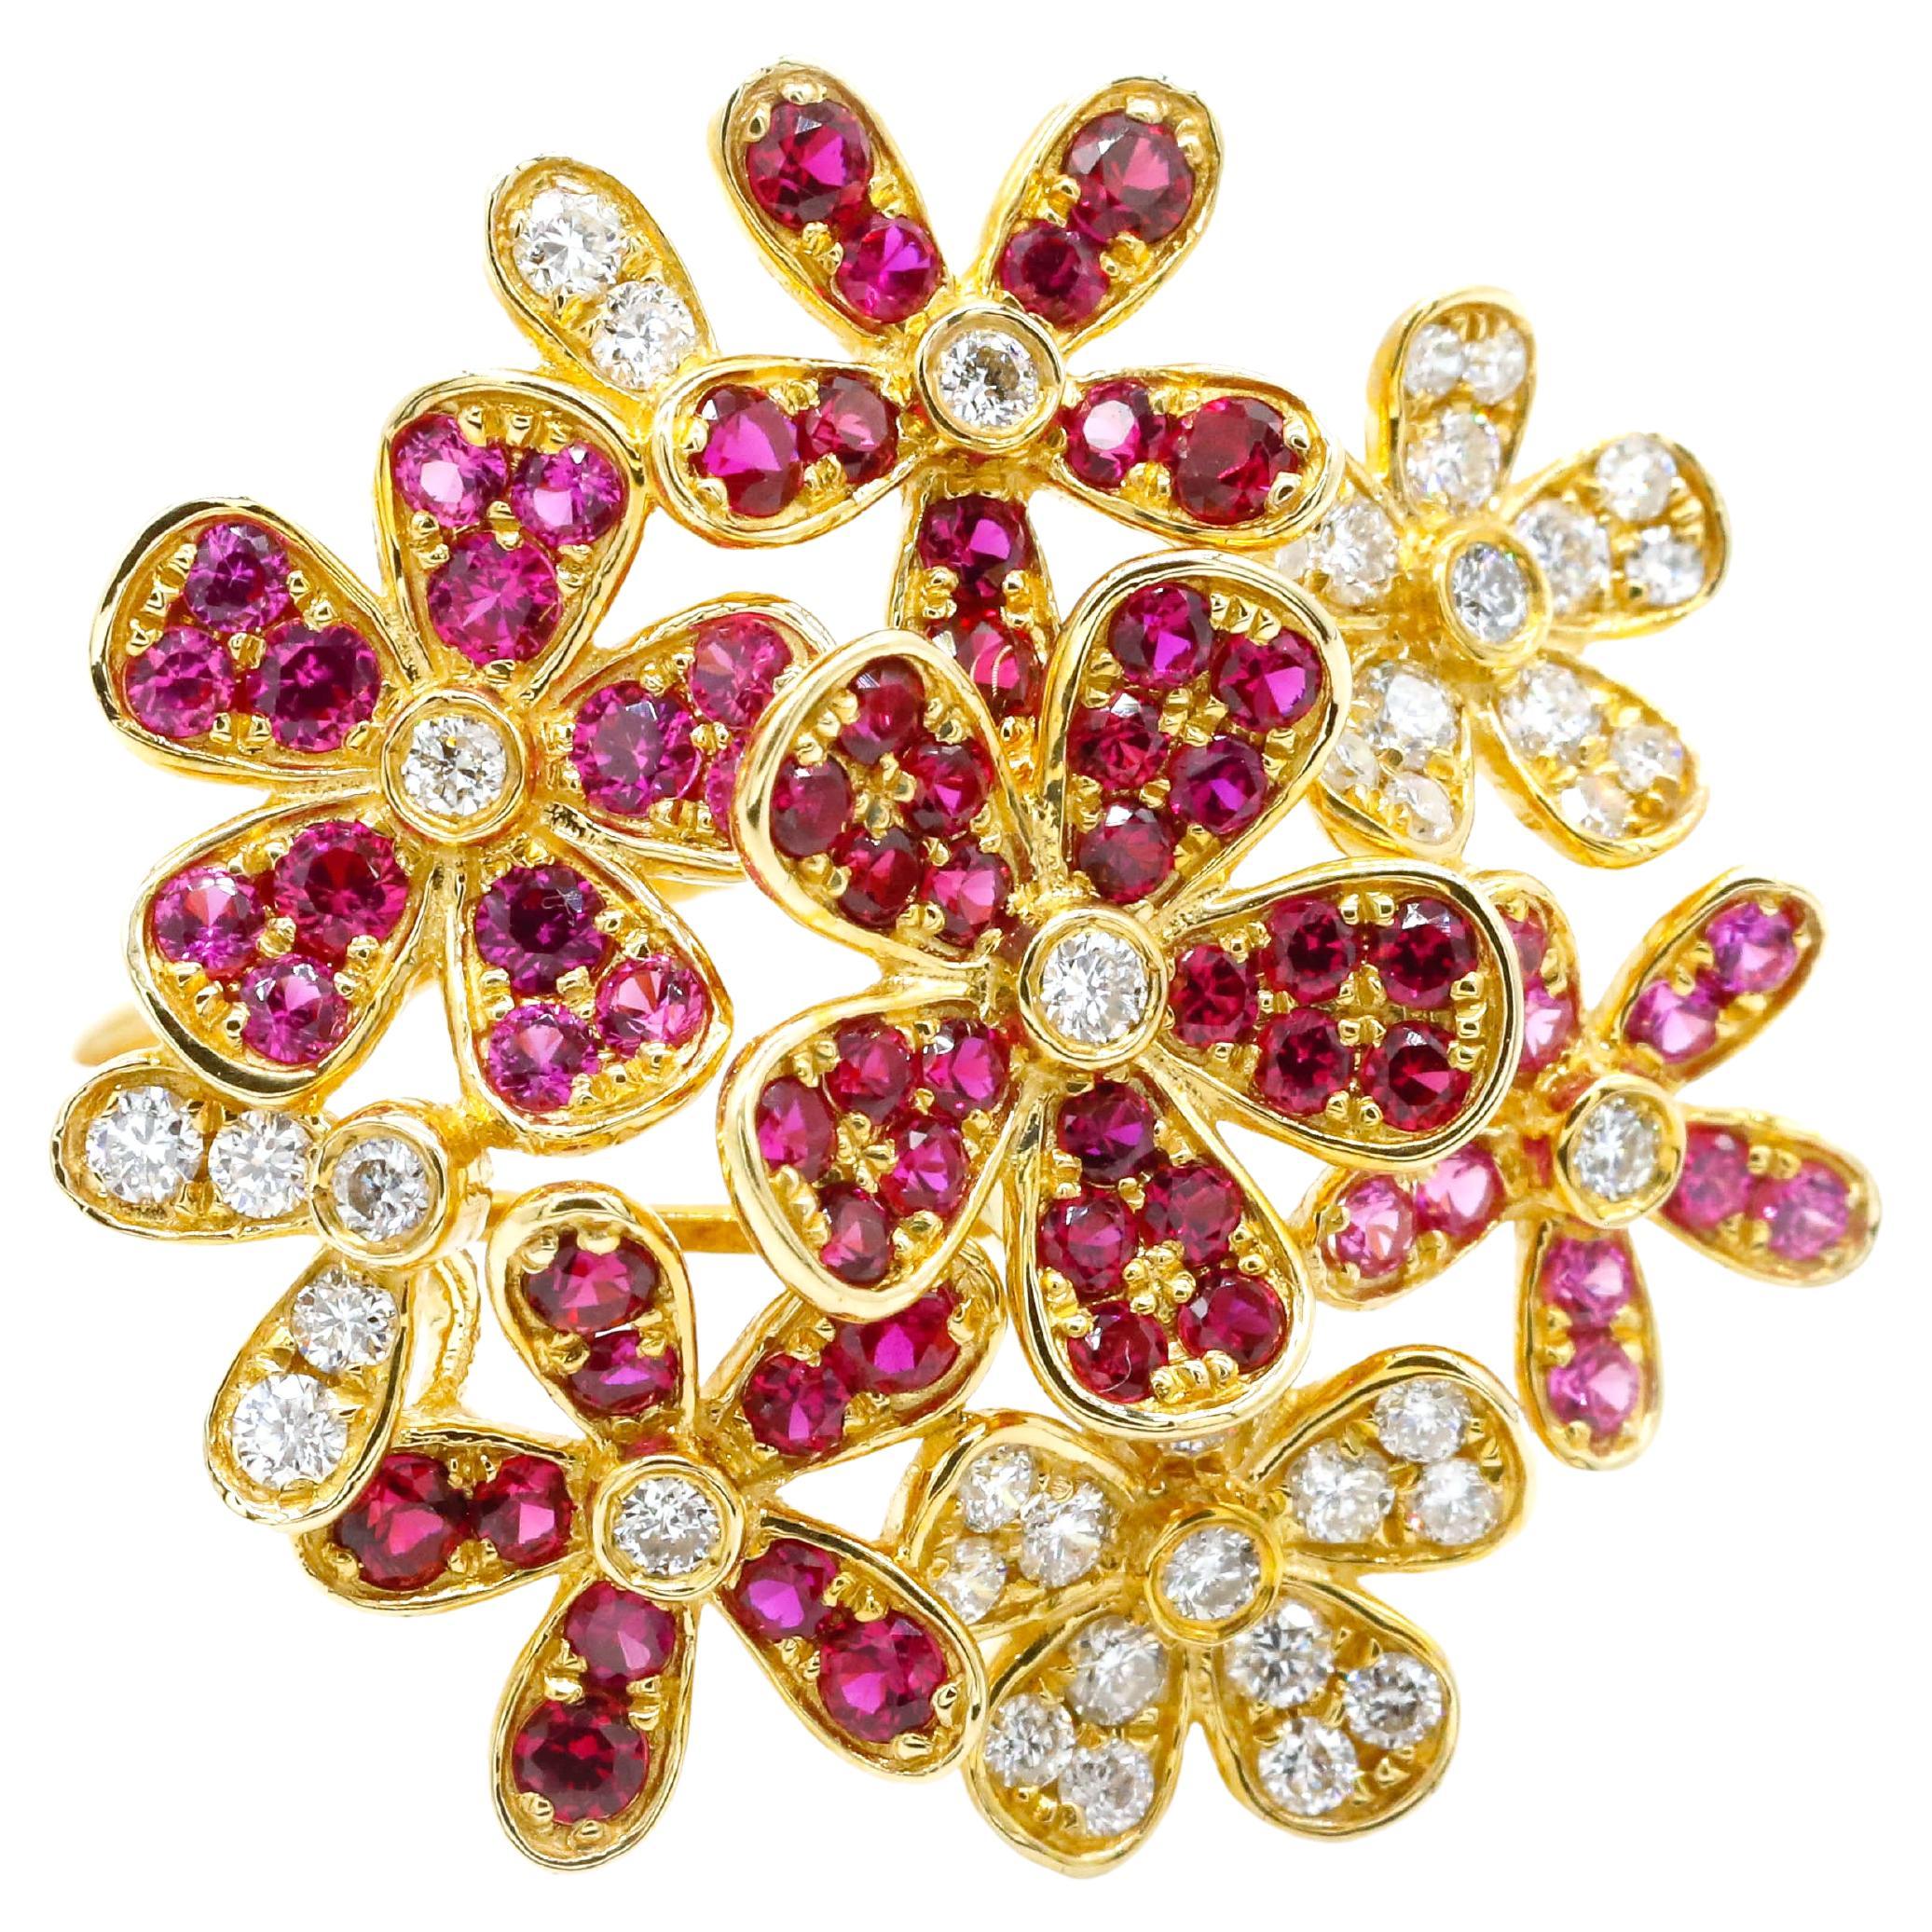 Bague enveloppante en or jaune 14 carats avec diamants 1,69 carat, rubis et saphirs roses pavés